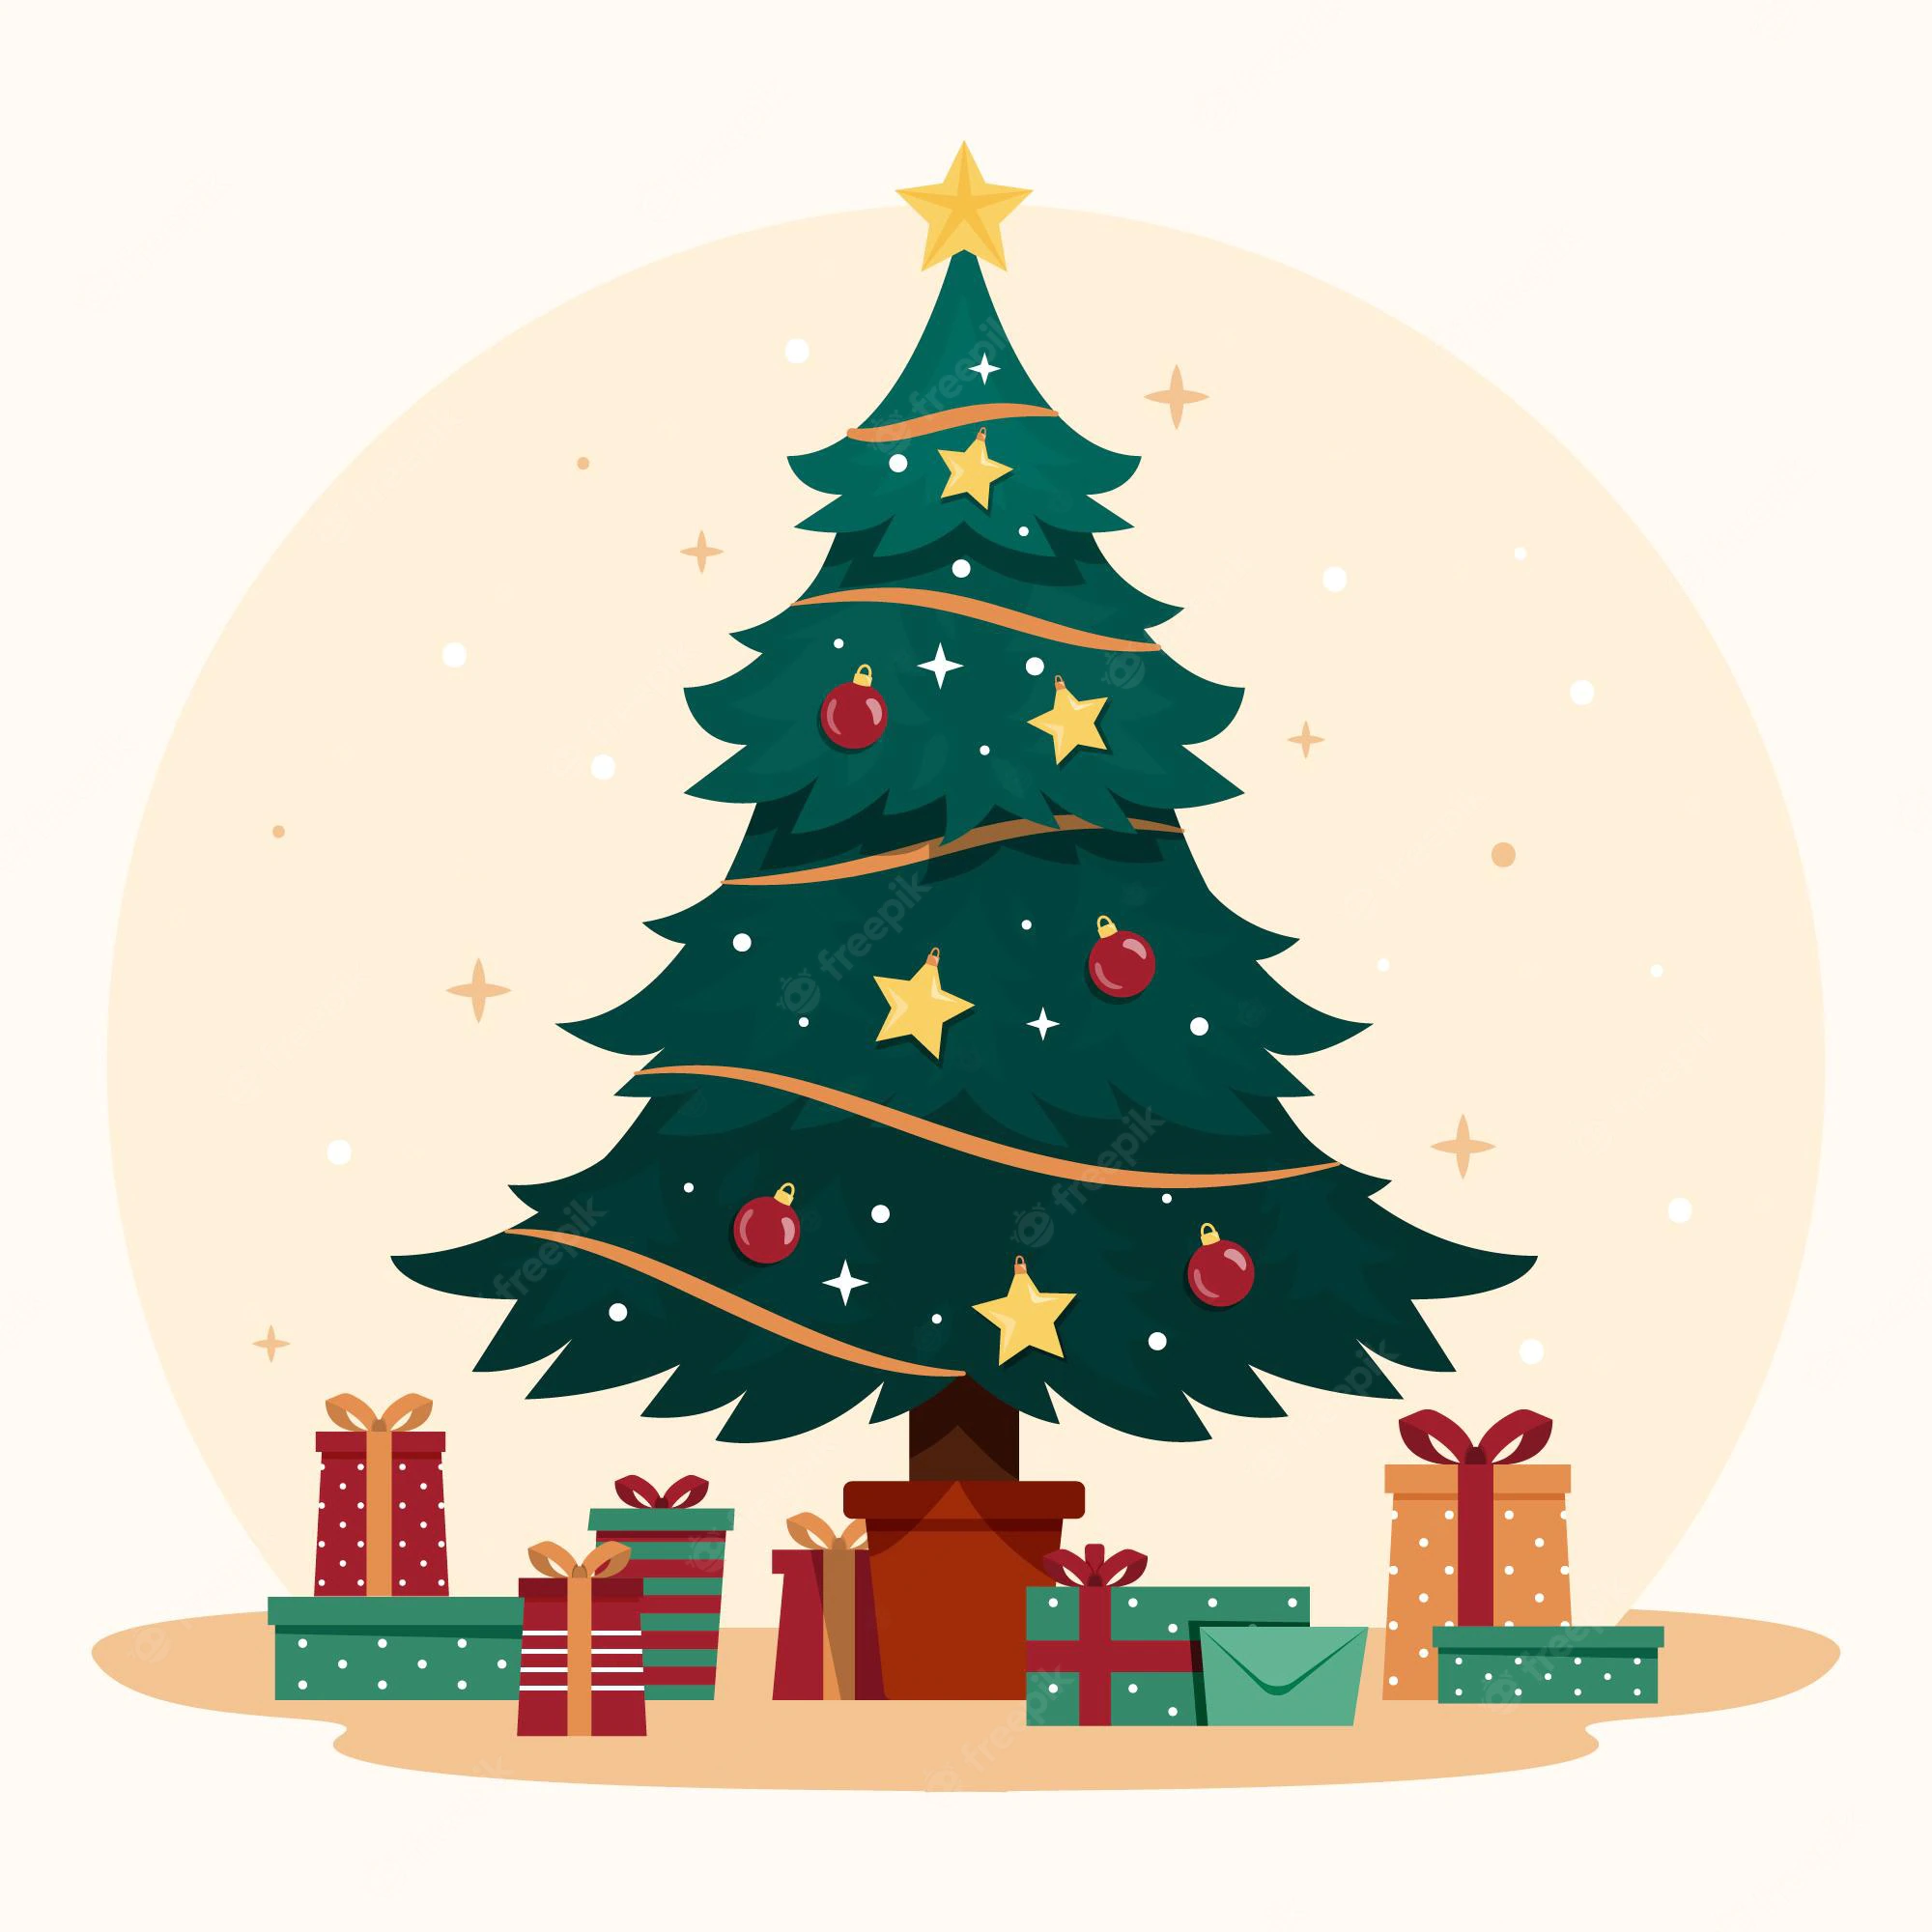 Qual o verdadeiro significado da árvore de natal?